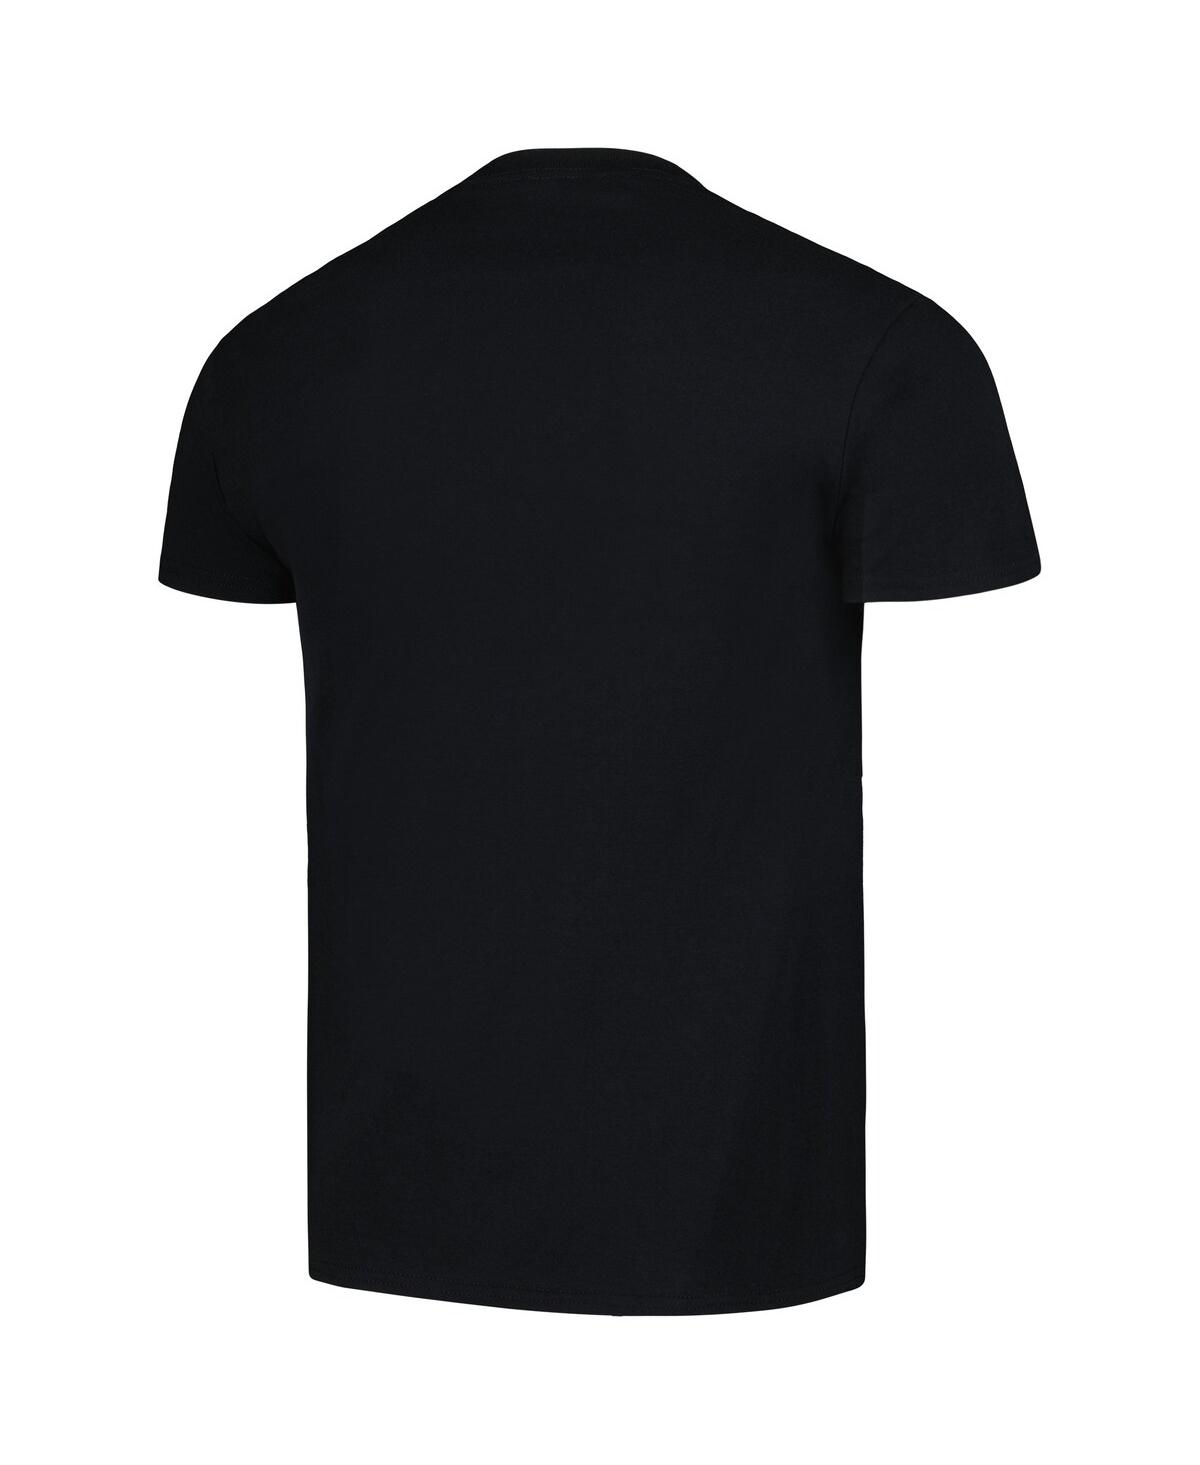 Shop Manhead Merch Men's Black Alanis Morissette T-shirt